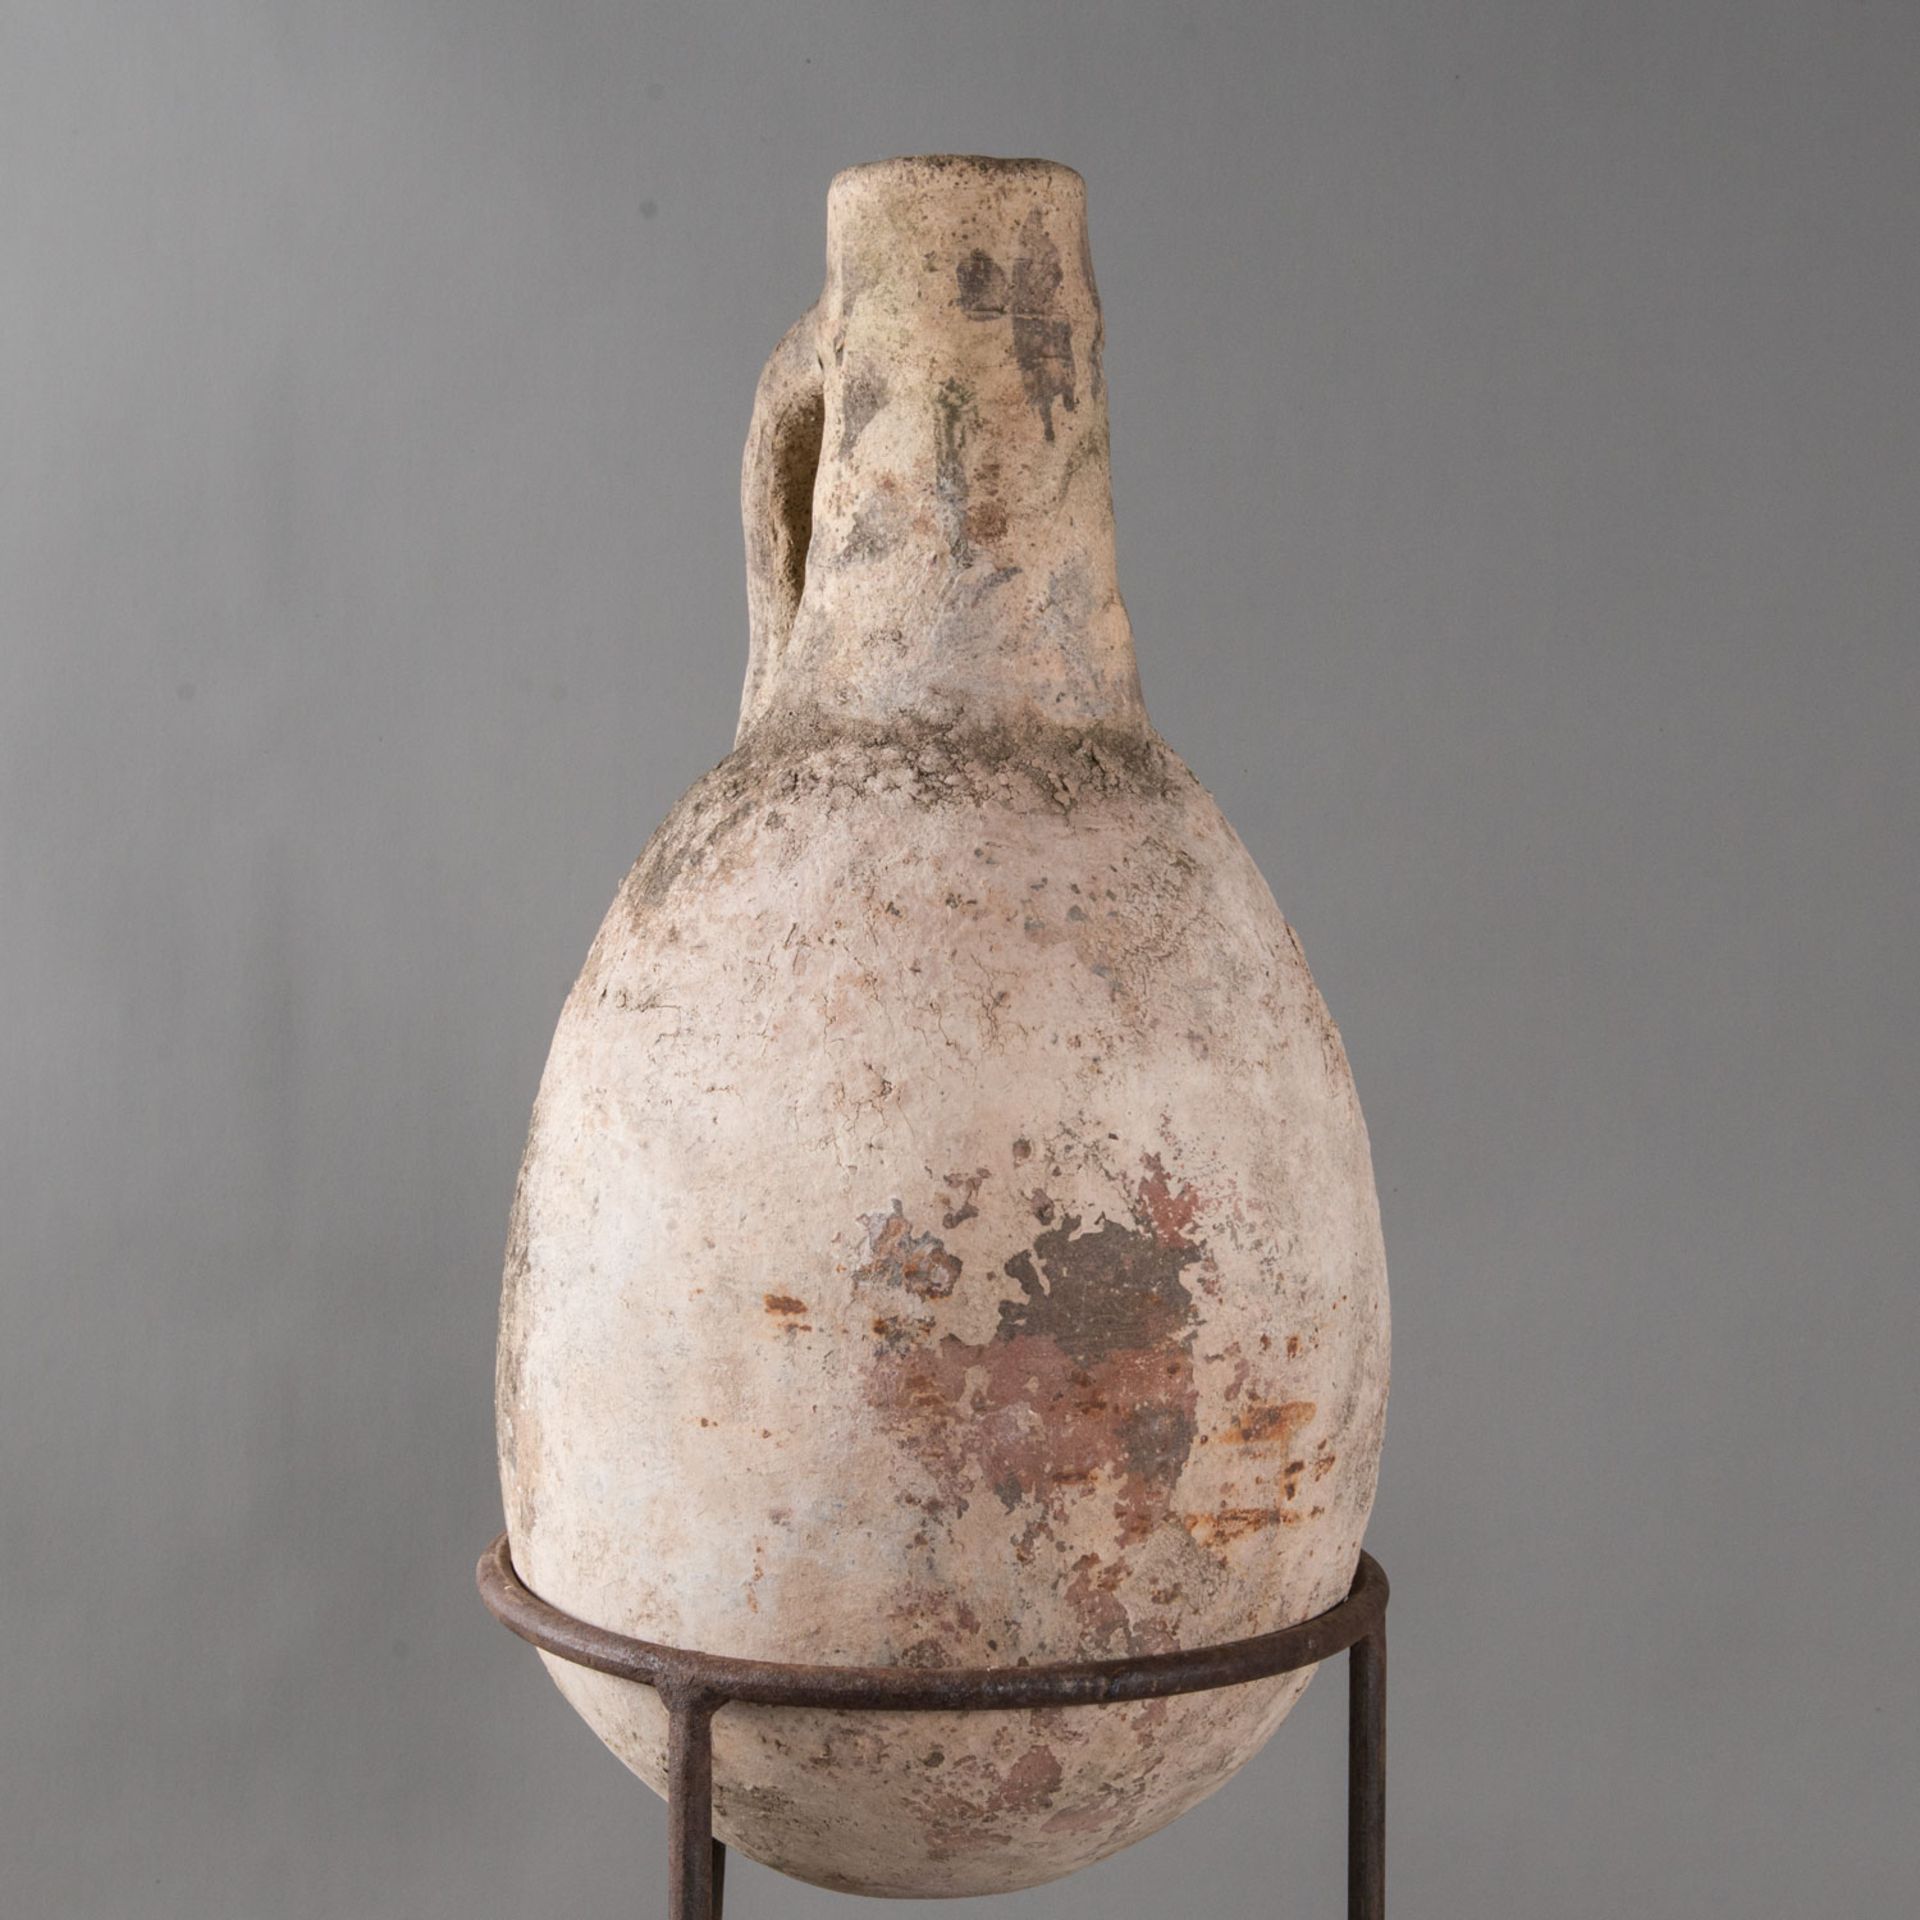 Ancient Ceramic Amphora - Image 3 of 3